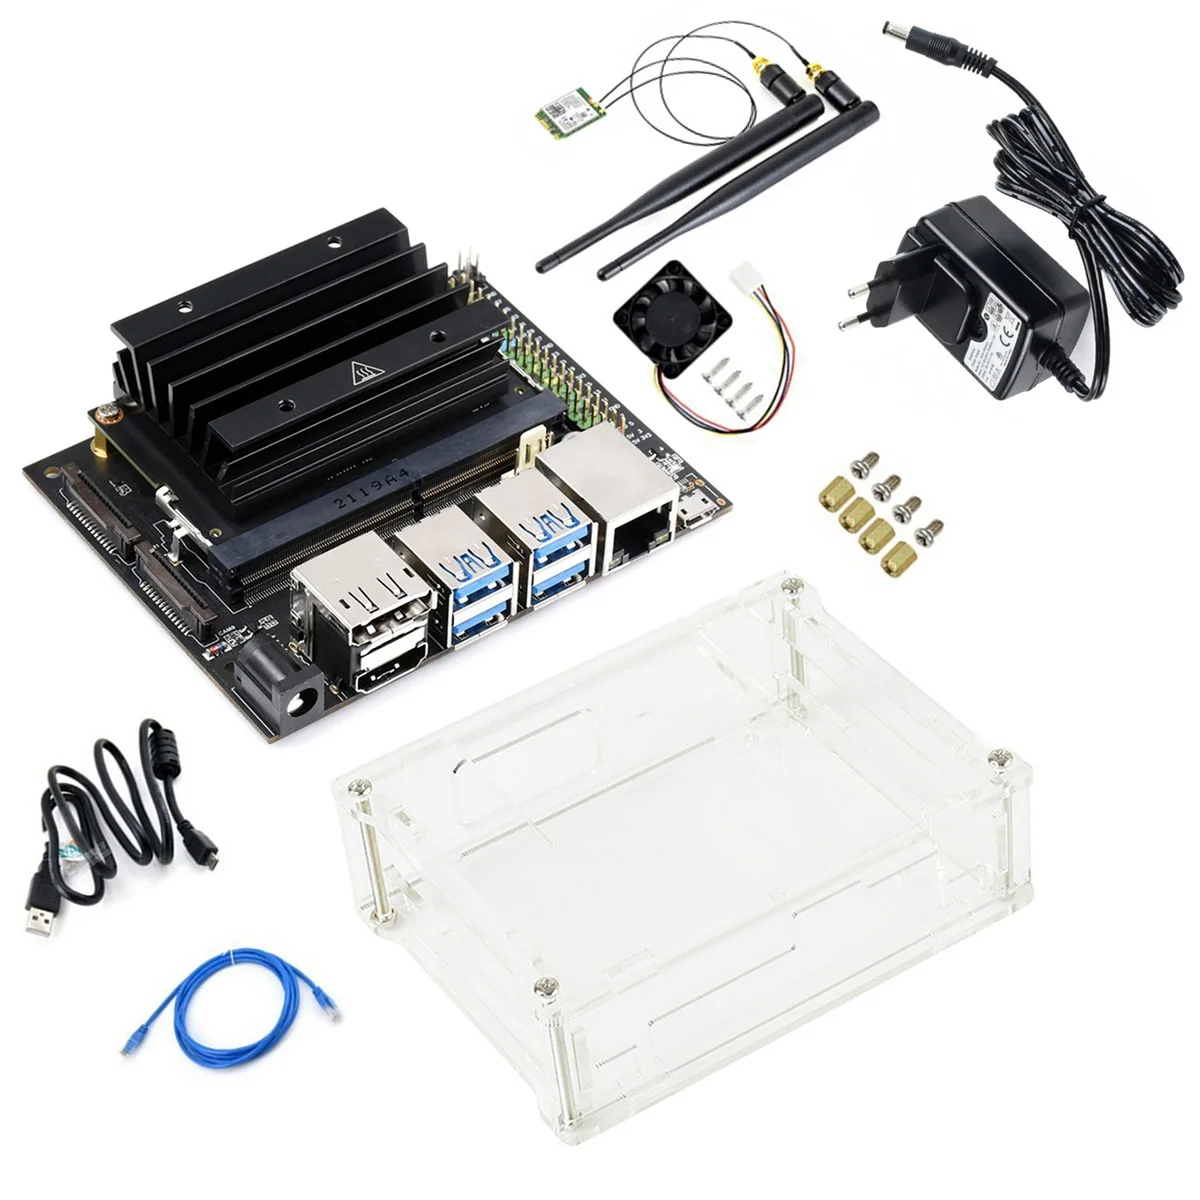 Eest Jetson Nano 4GB Areng+Moodul+Heatsink+Case+Ventilaator+Võrgu Kaart+RJ45 võrgukaabli+USB Kaabel+toiteplokk,EU Pistik